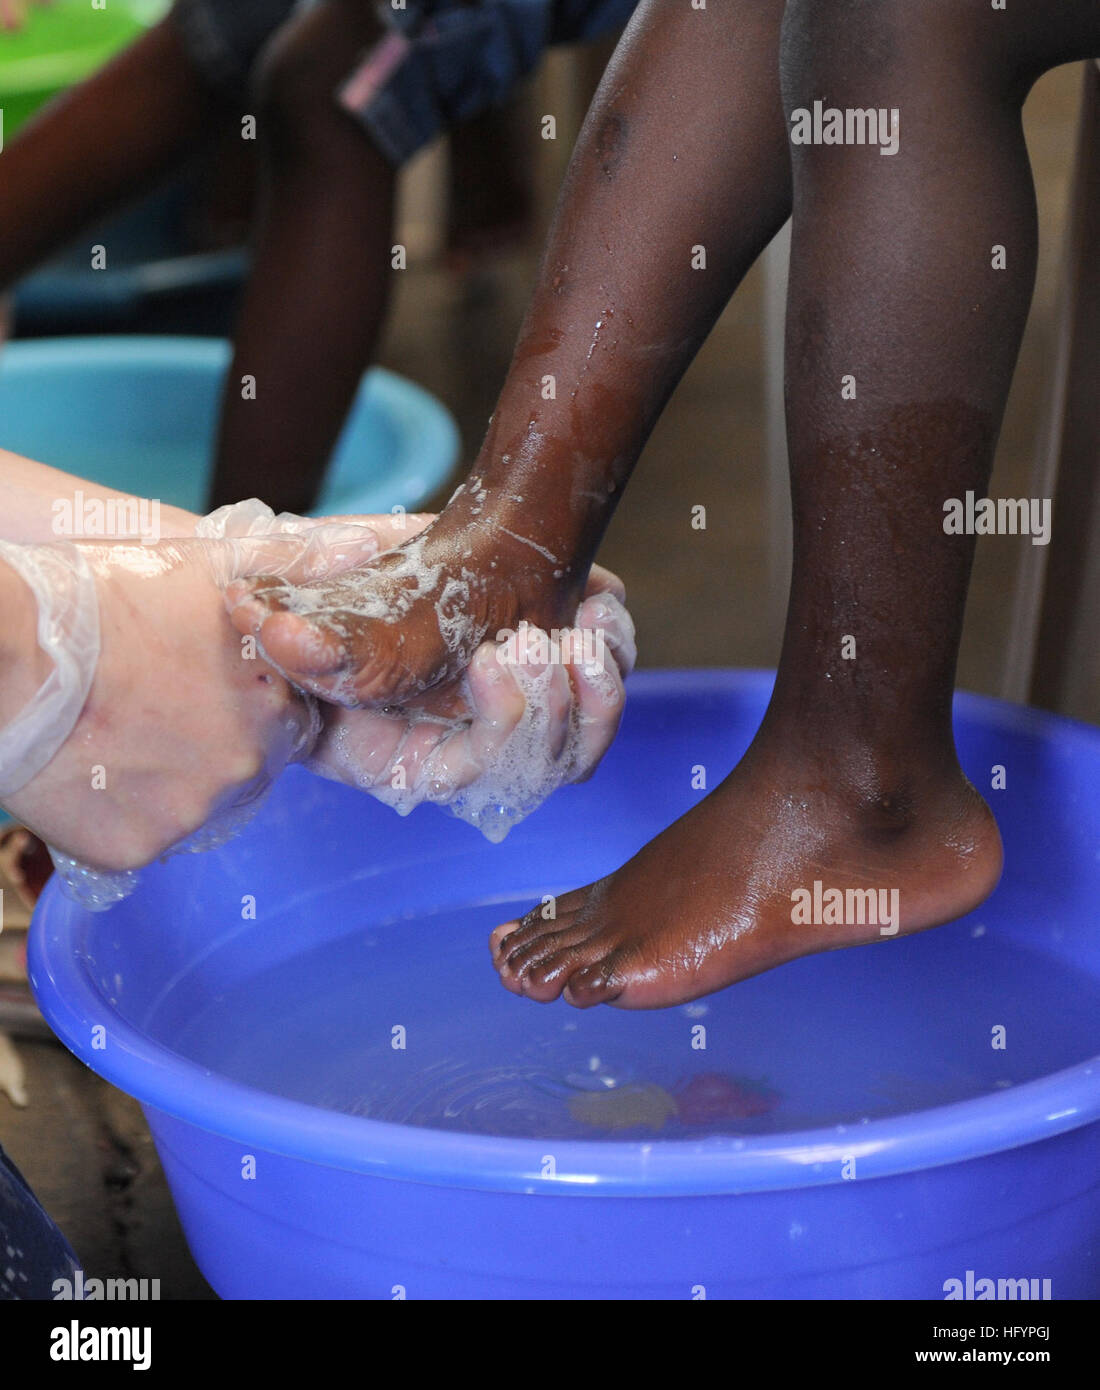 110421-F-ET173-062 KINGSTON, Jamaika (21. April 2011) A Sailor wäscht ein Kind Füße bevor Sie ihm ein paar neue Schuhe während einer anhaltenden Versprechen geben Schuh Werbegeschenk. Die Veranstaltung wurde gesponsert von Samaritan es Füße, eine nichtstaatliche Organisation, spezialisiert auf Schuhe für Menschen, die nicht leisten können. Weiterhin verspricht eine fünfmonatige humanitäre Hilfsmission, Karibik, Mittel- und Südamerika.  (US Air Force Foto von Staff Sgt. Alesia D. Goosic/freigegeben) US Navy 110421-F-ET173-062 A Sailor wäscht die Füße des Kindes bevor Sie ihm ein paar neue Schuhe während einer anhaltenden P geben Stockfoto